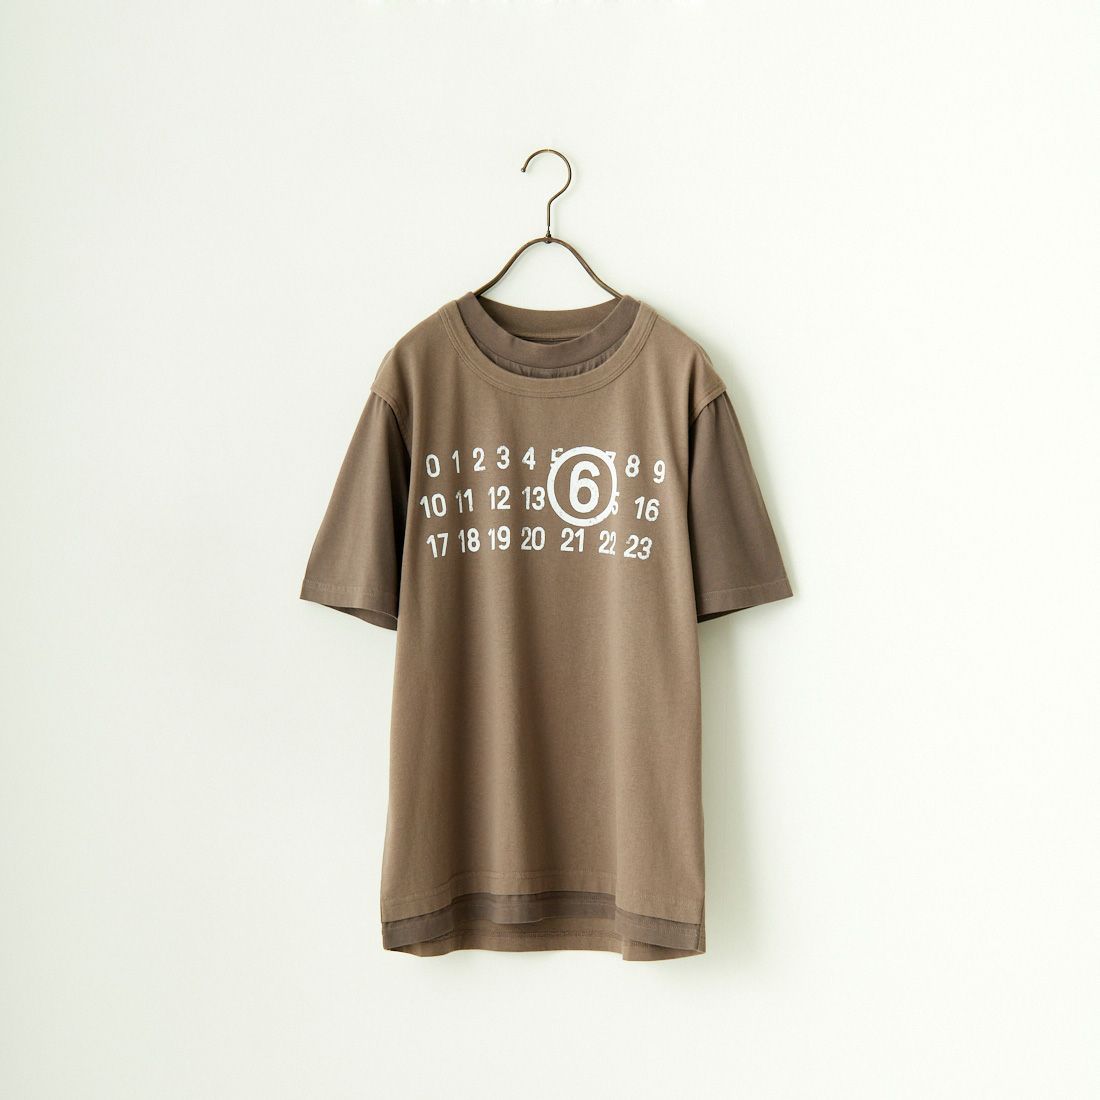 MM6 Maison Margiela [エムエムシックス メゾン マルジェラ] ナンバーロゴTシャツ [SH0GC0001-STJ391]